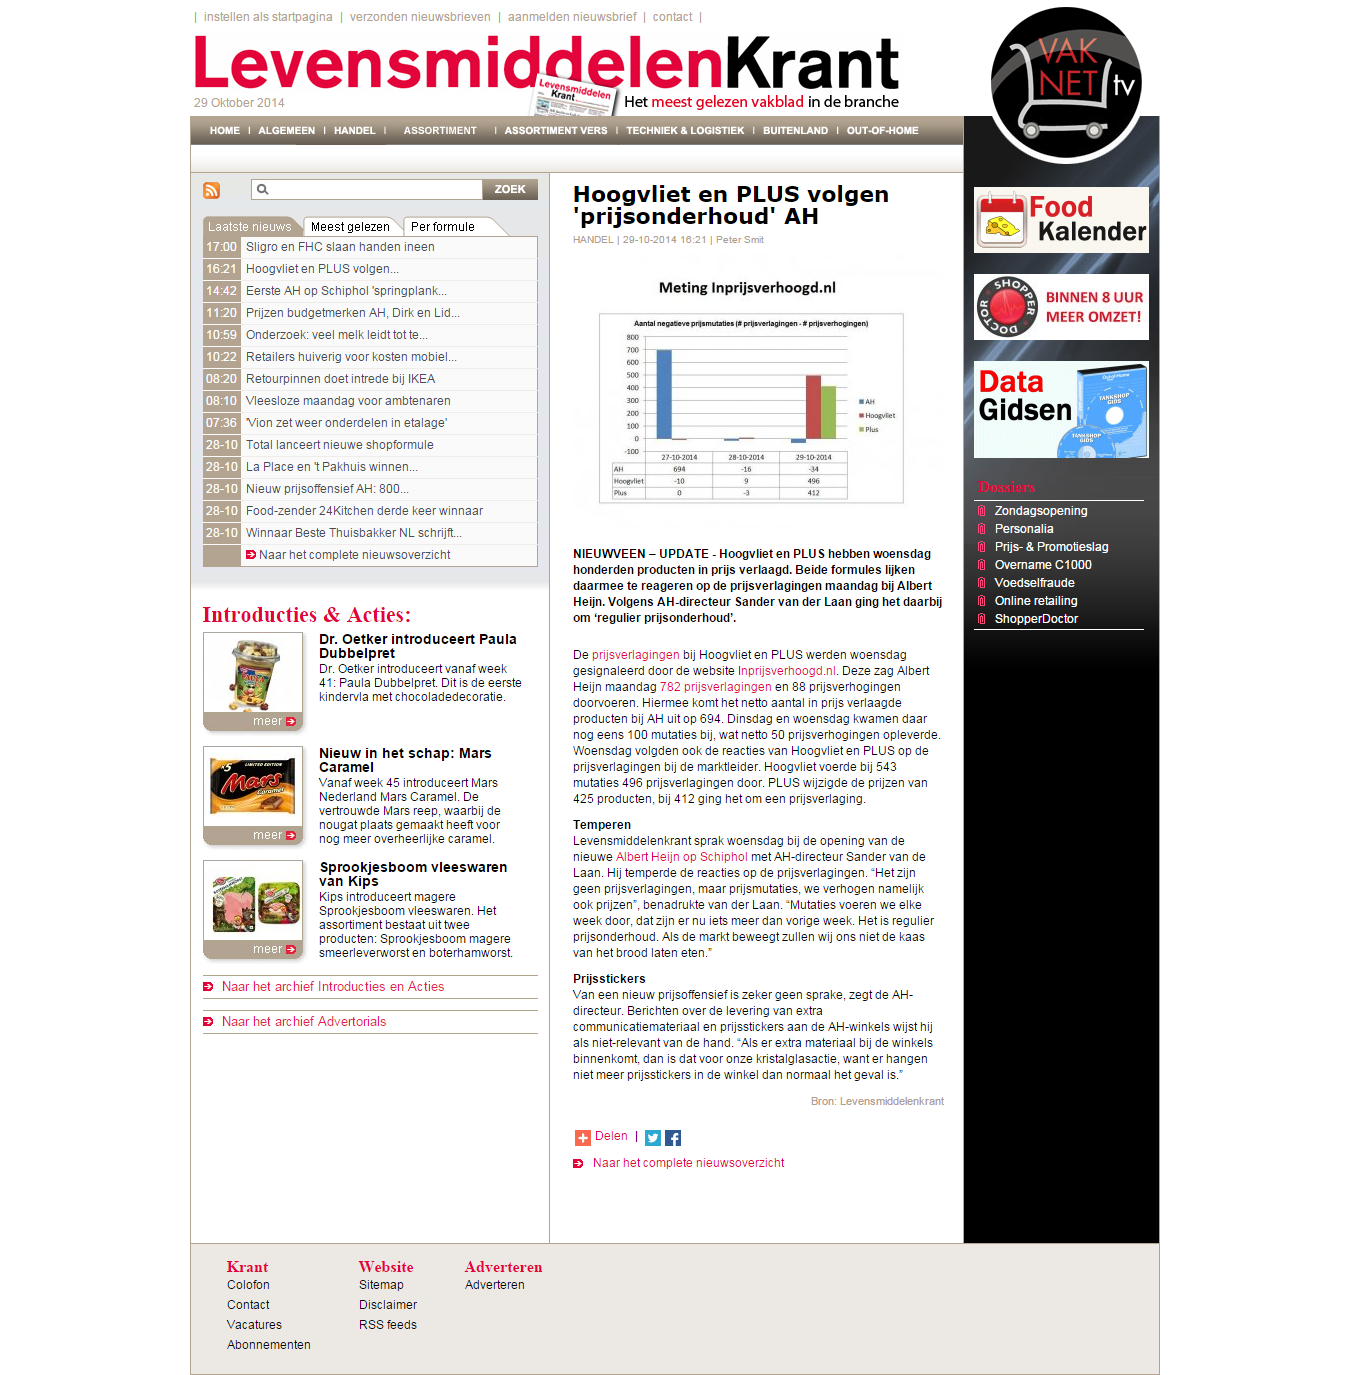 Levensmiddelenkrant.nl: Hoogvliet en PLUS volgen 'prijsonderhoud' AH